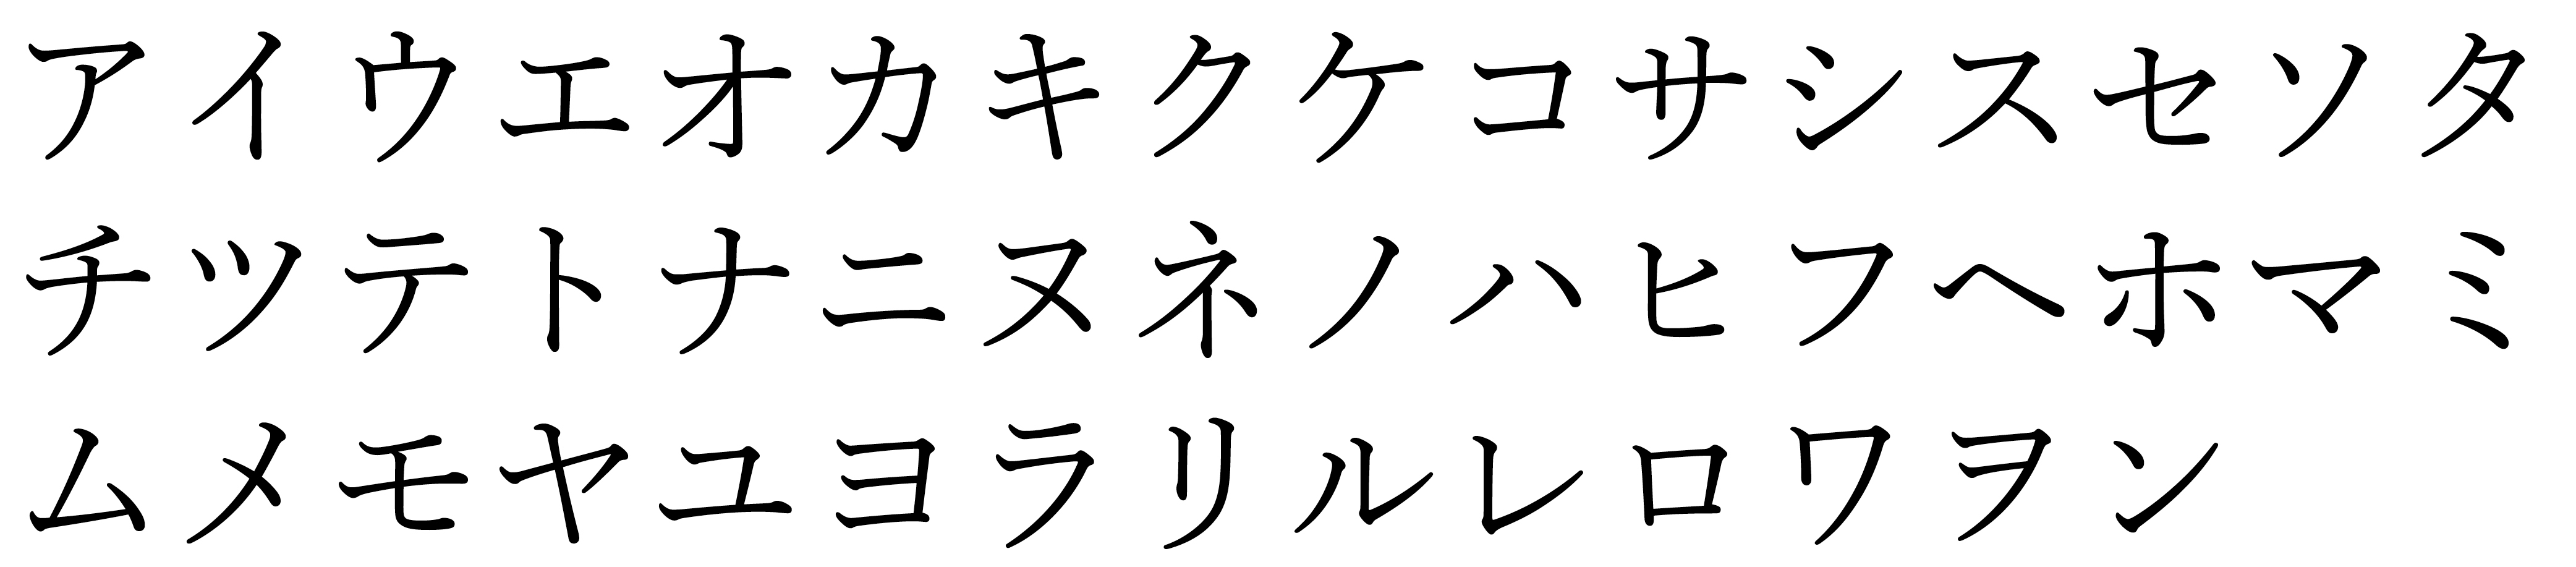 46 Basic katakana characters